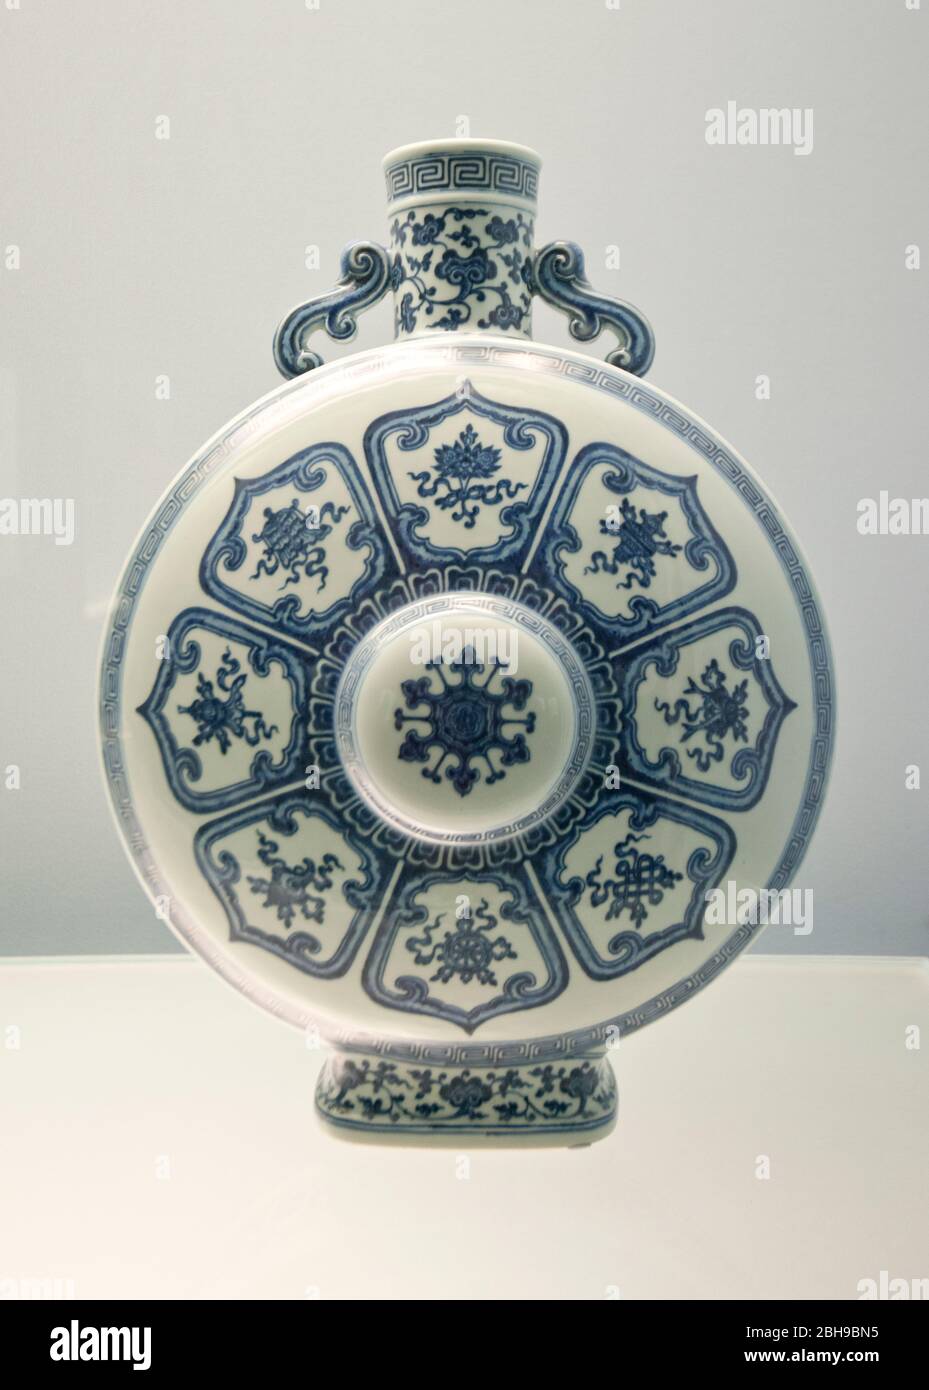 Porcellana cinese: Fiasca blu con due manici - Jingdezhen Ware - Qianlong Reign (1736-1795 d.C.) Dinastia Qing. Museo di Shanghai Foto Stock